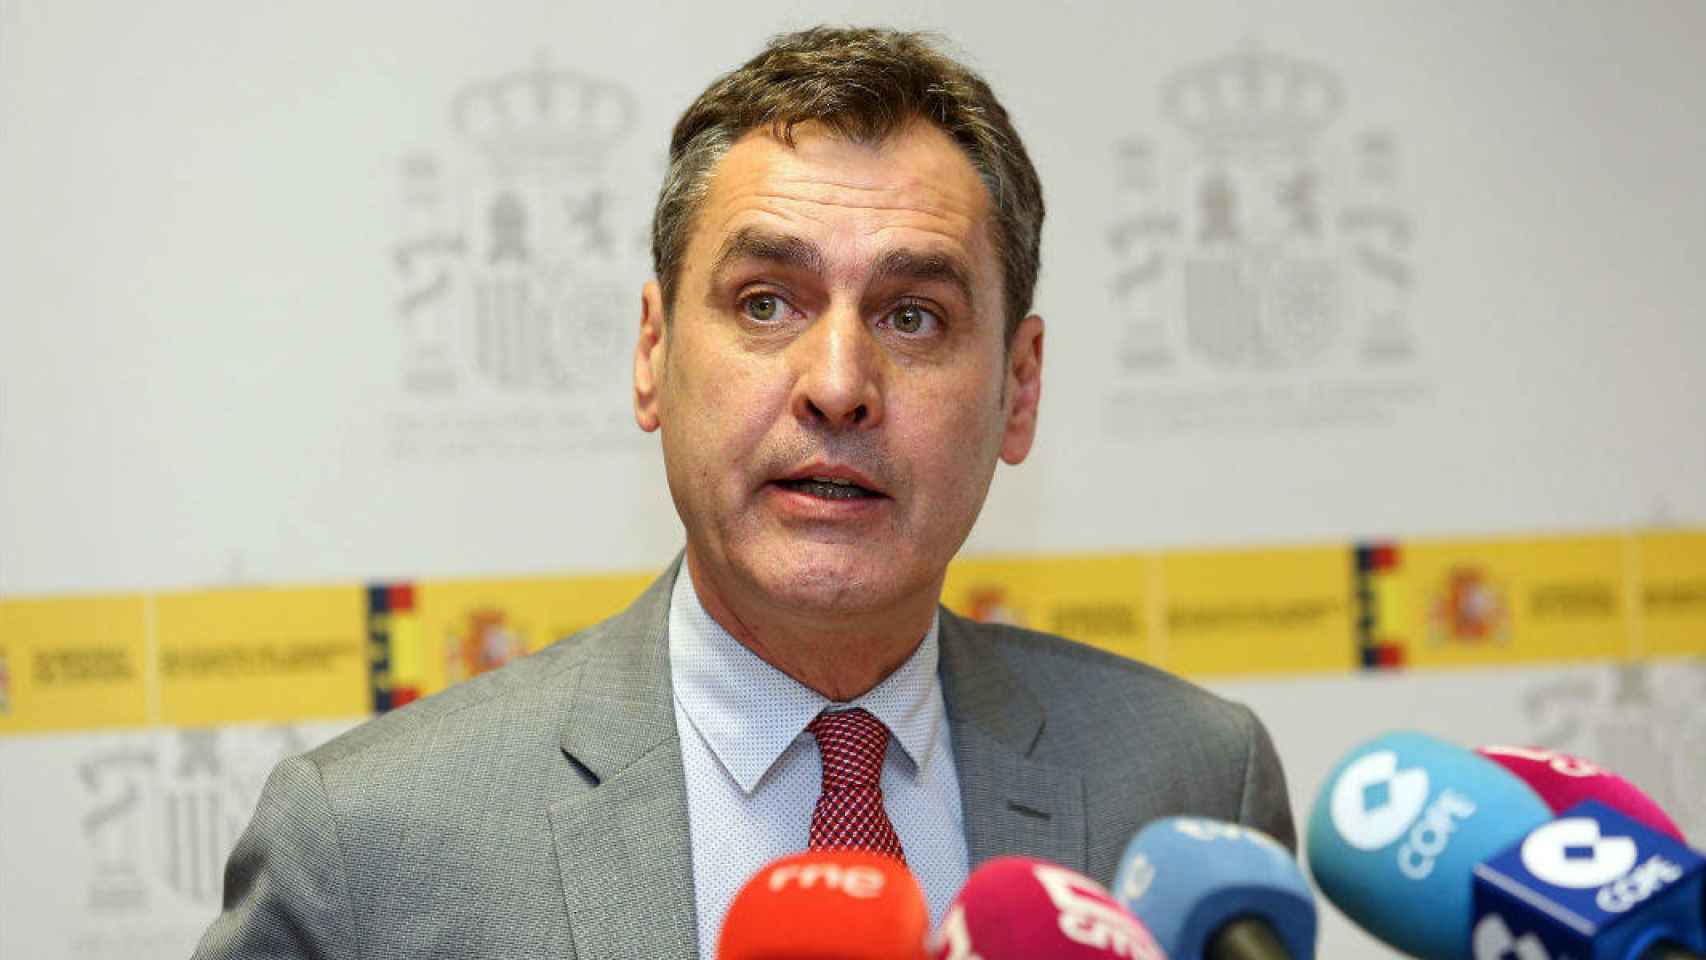 Francisco Tierraseca, delegado del Gobierno en Castilla-La Mancha, en una imagen de archivo. Foto: Óscar Huertas